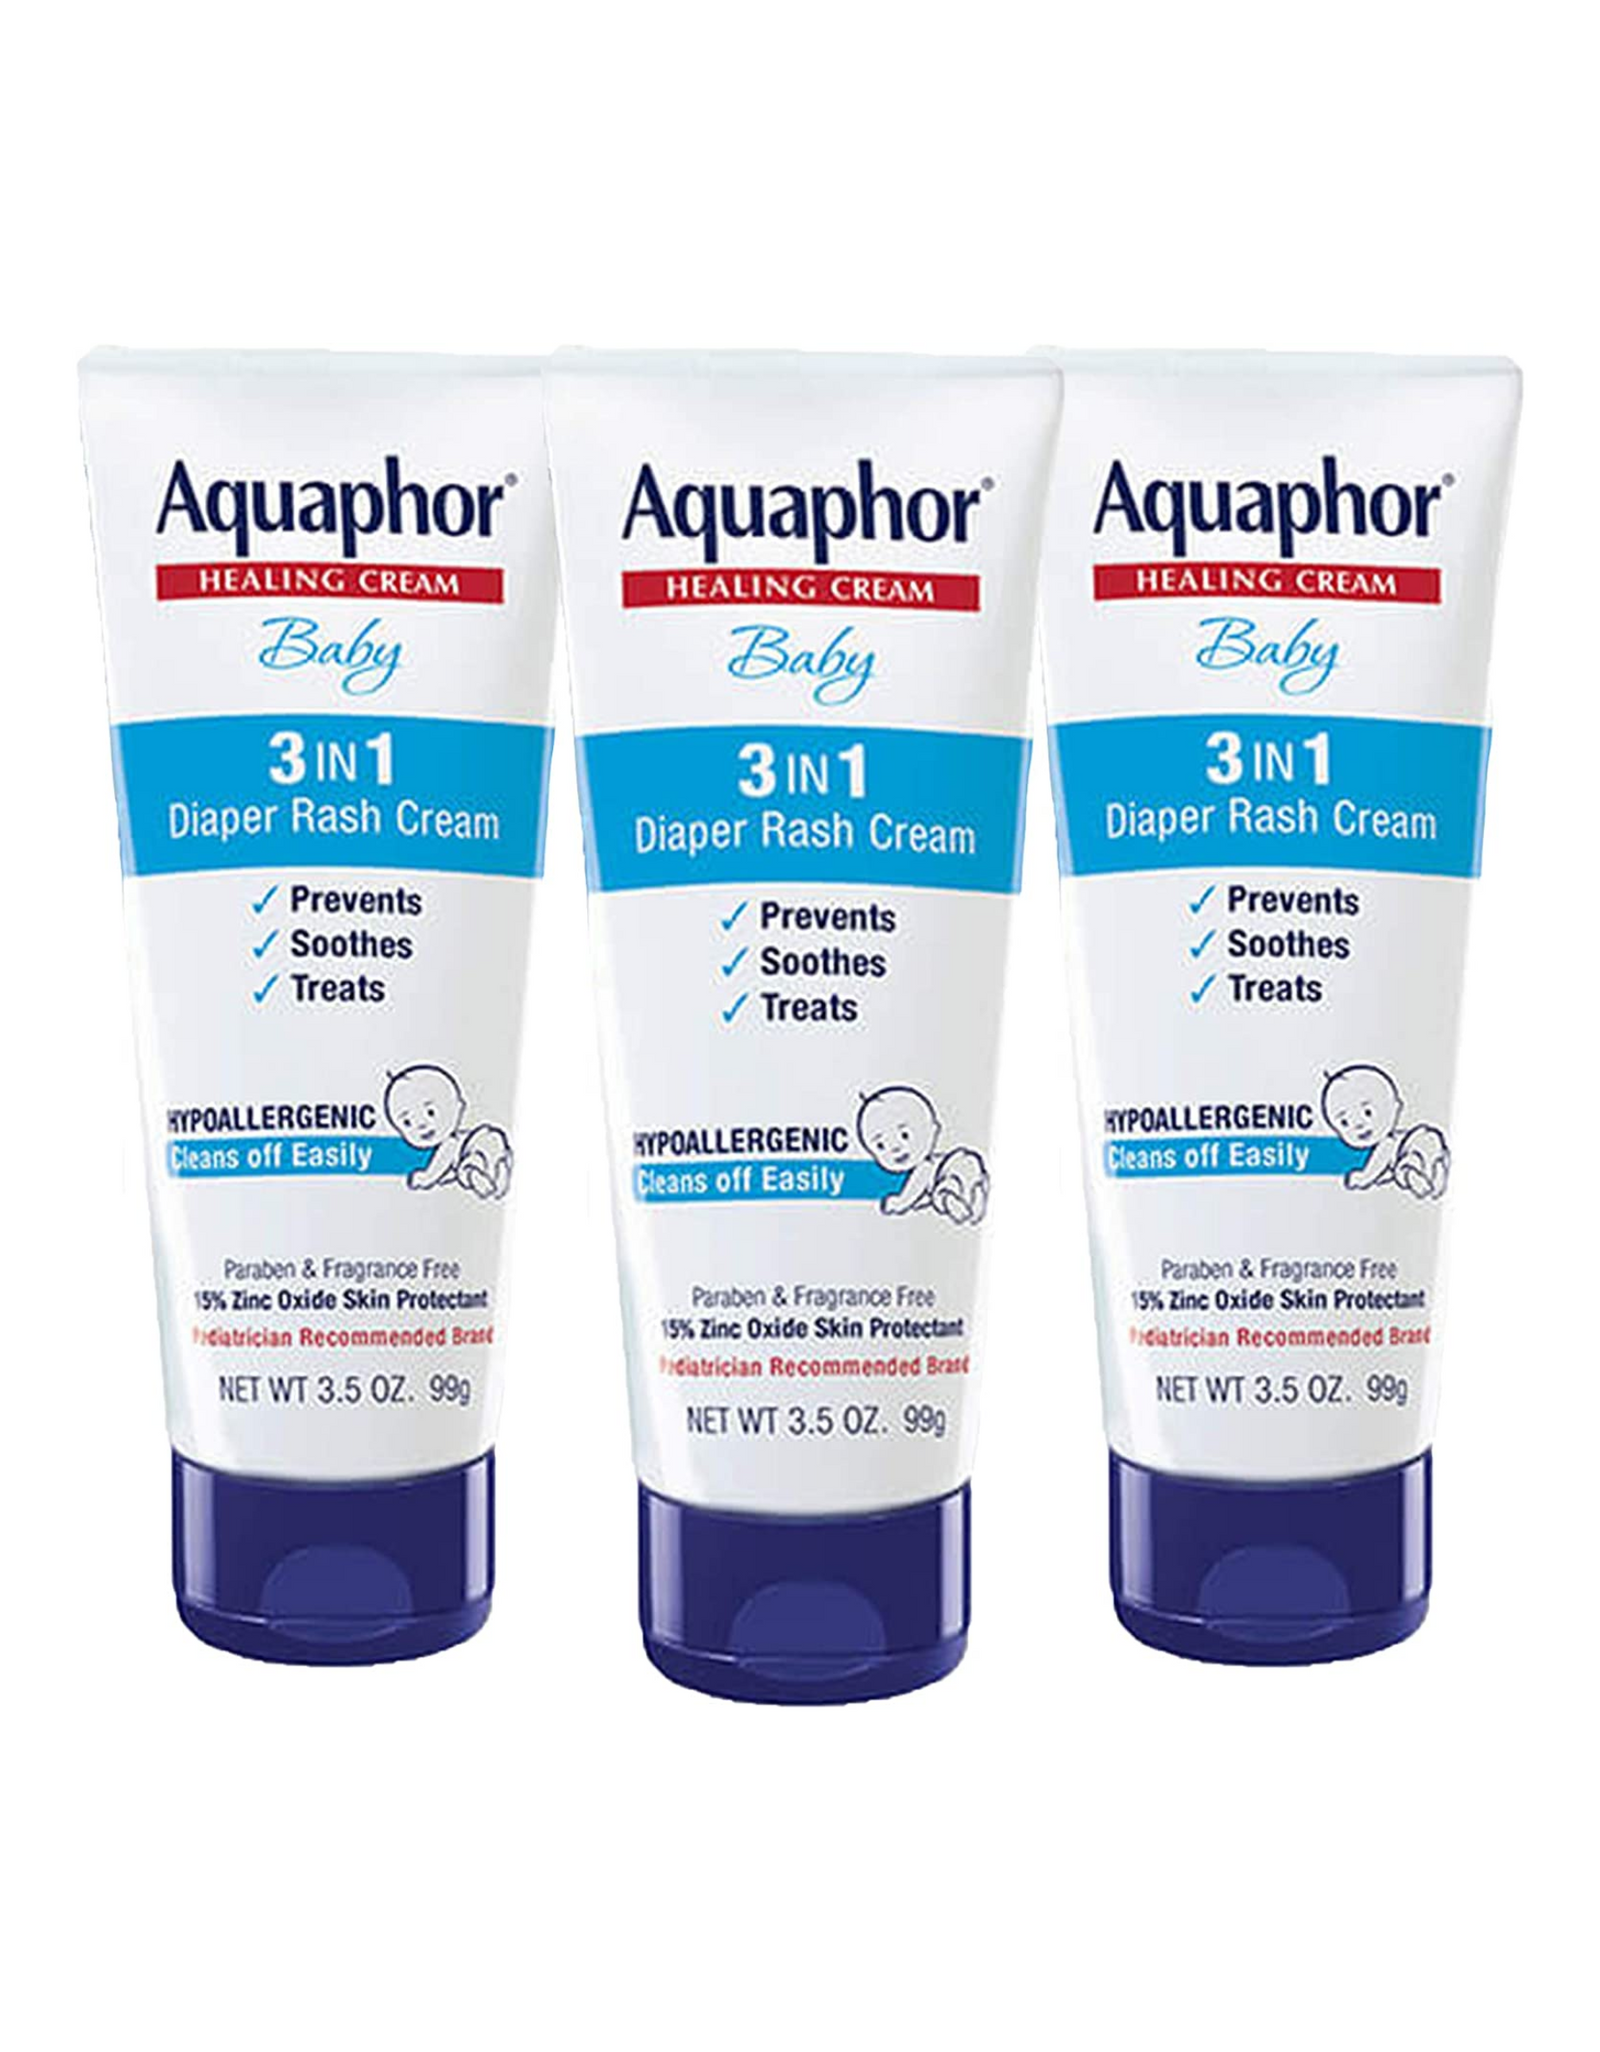 Aquaphor Baby Diaper Rash Cream, 3-in-1 Diaper Rash Cream, 3.5 Oz (Pack of 3)